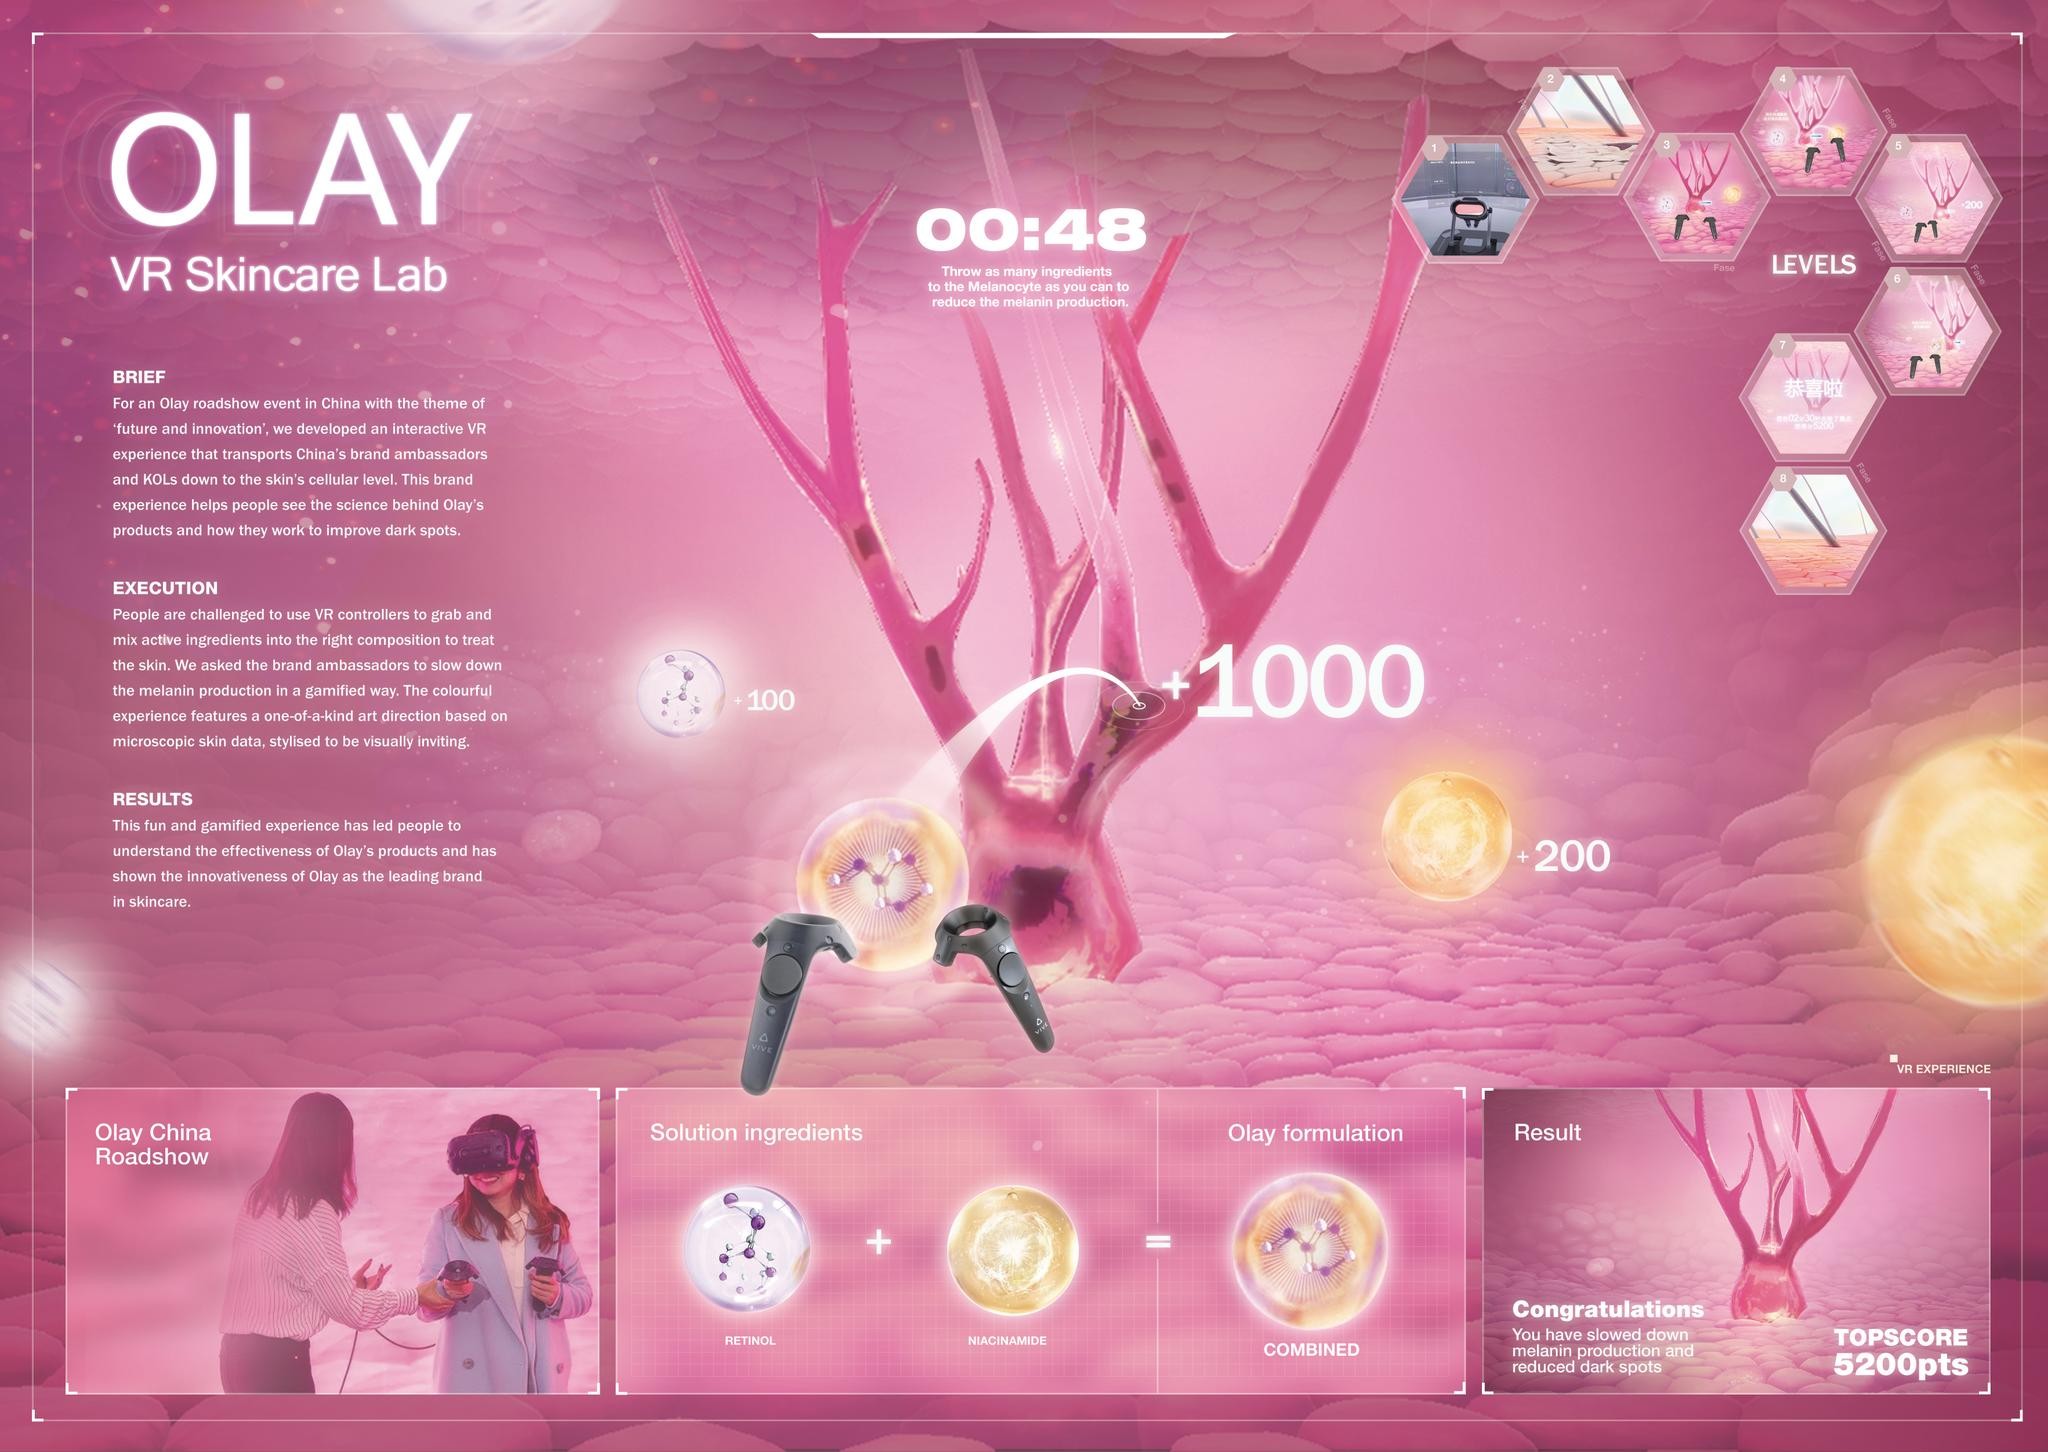 Olay: Virtual Reality Experience